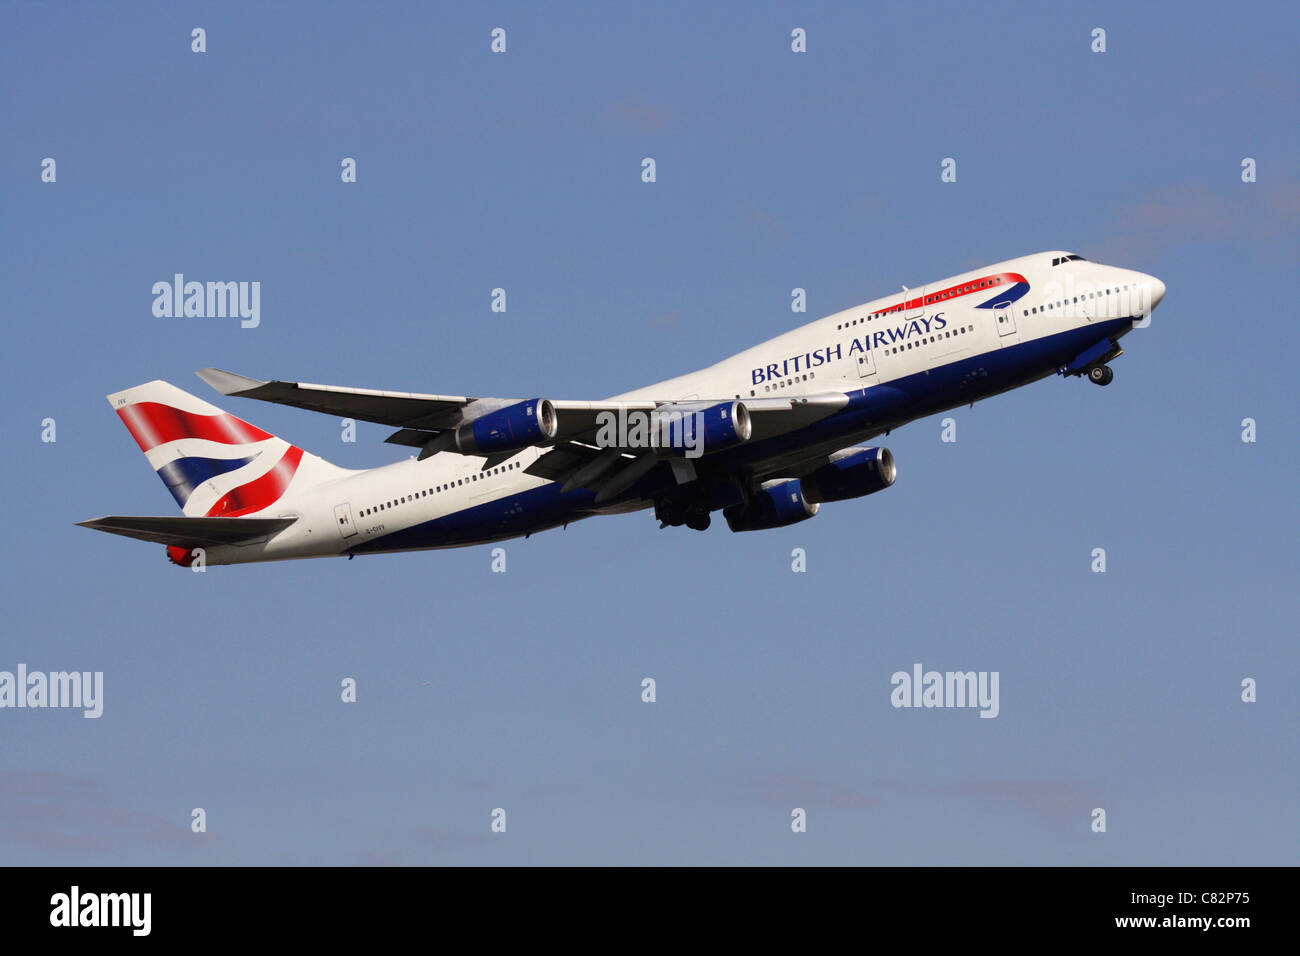 British Airways Boeing 747-400 jumbo jet avion au décollage d'escalade contre un ciel bleu clair. Vue de côté. Banque D'Images